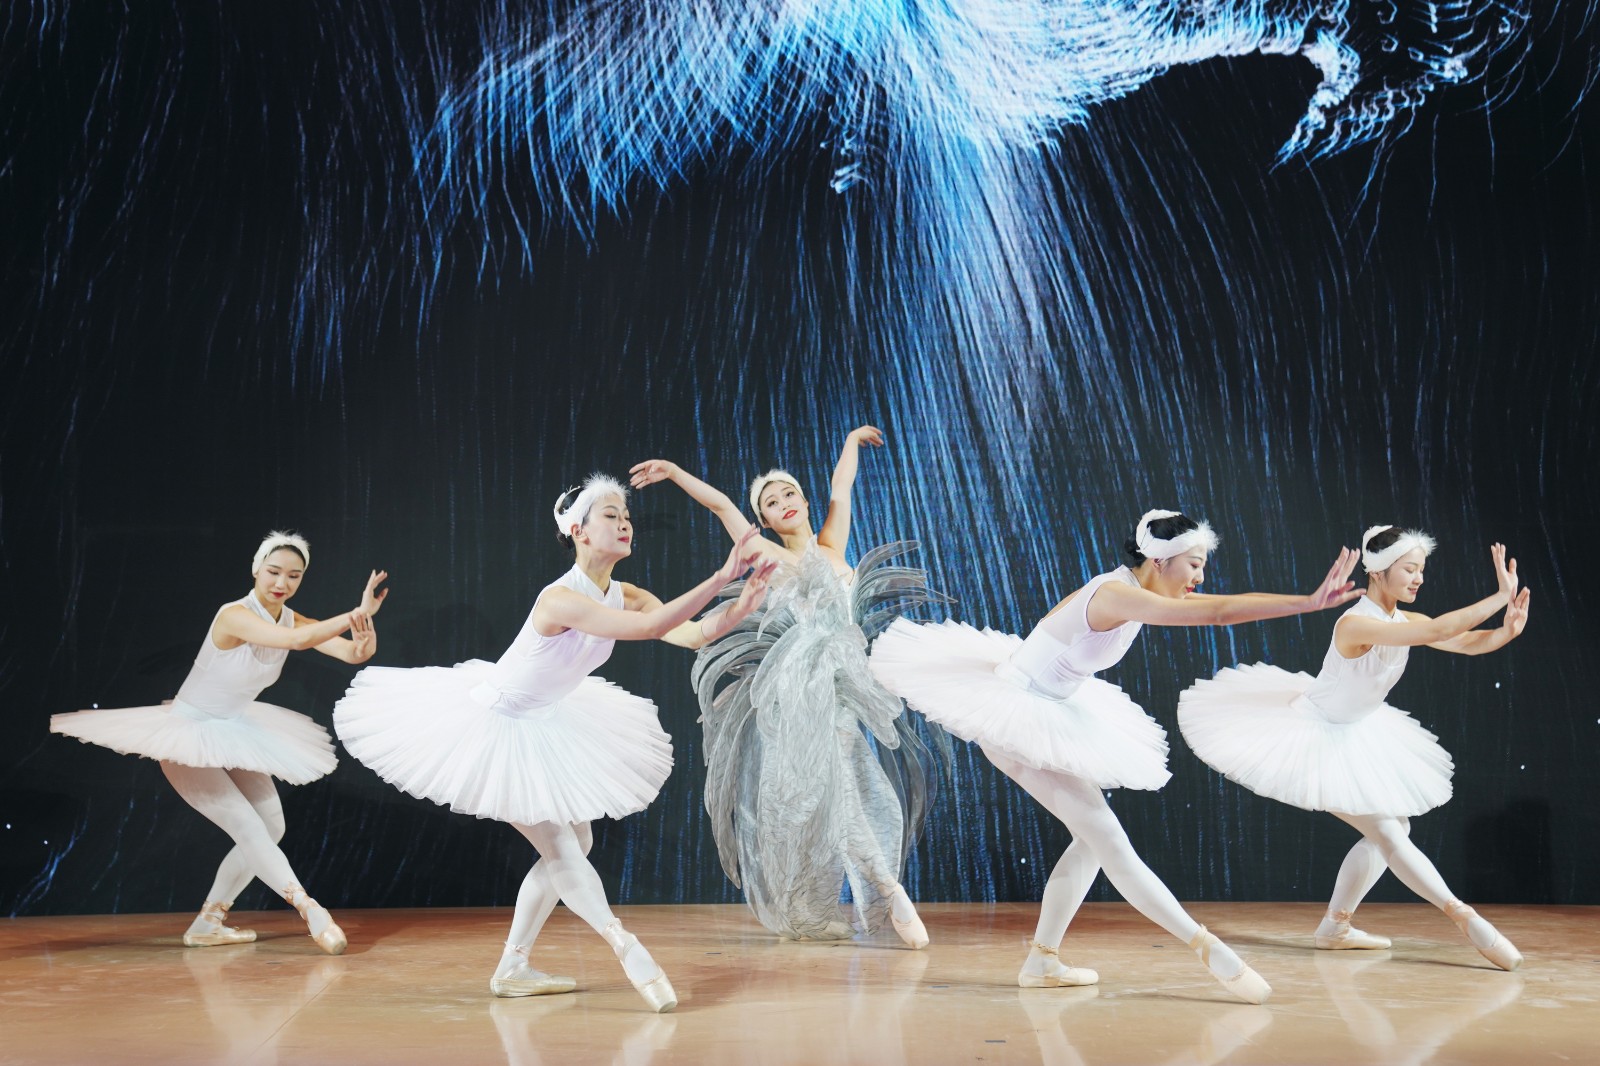 大连恒隆广场特邀国际级舞团呈现芭蕾舞《鎏金舞会》，舞姿优雅灵动，带来美妙的视觉享受